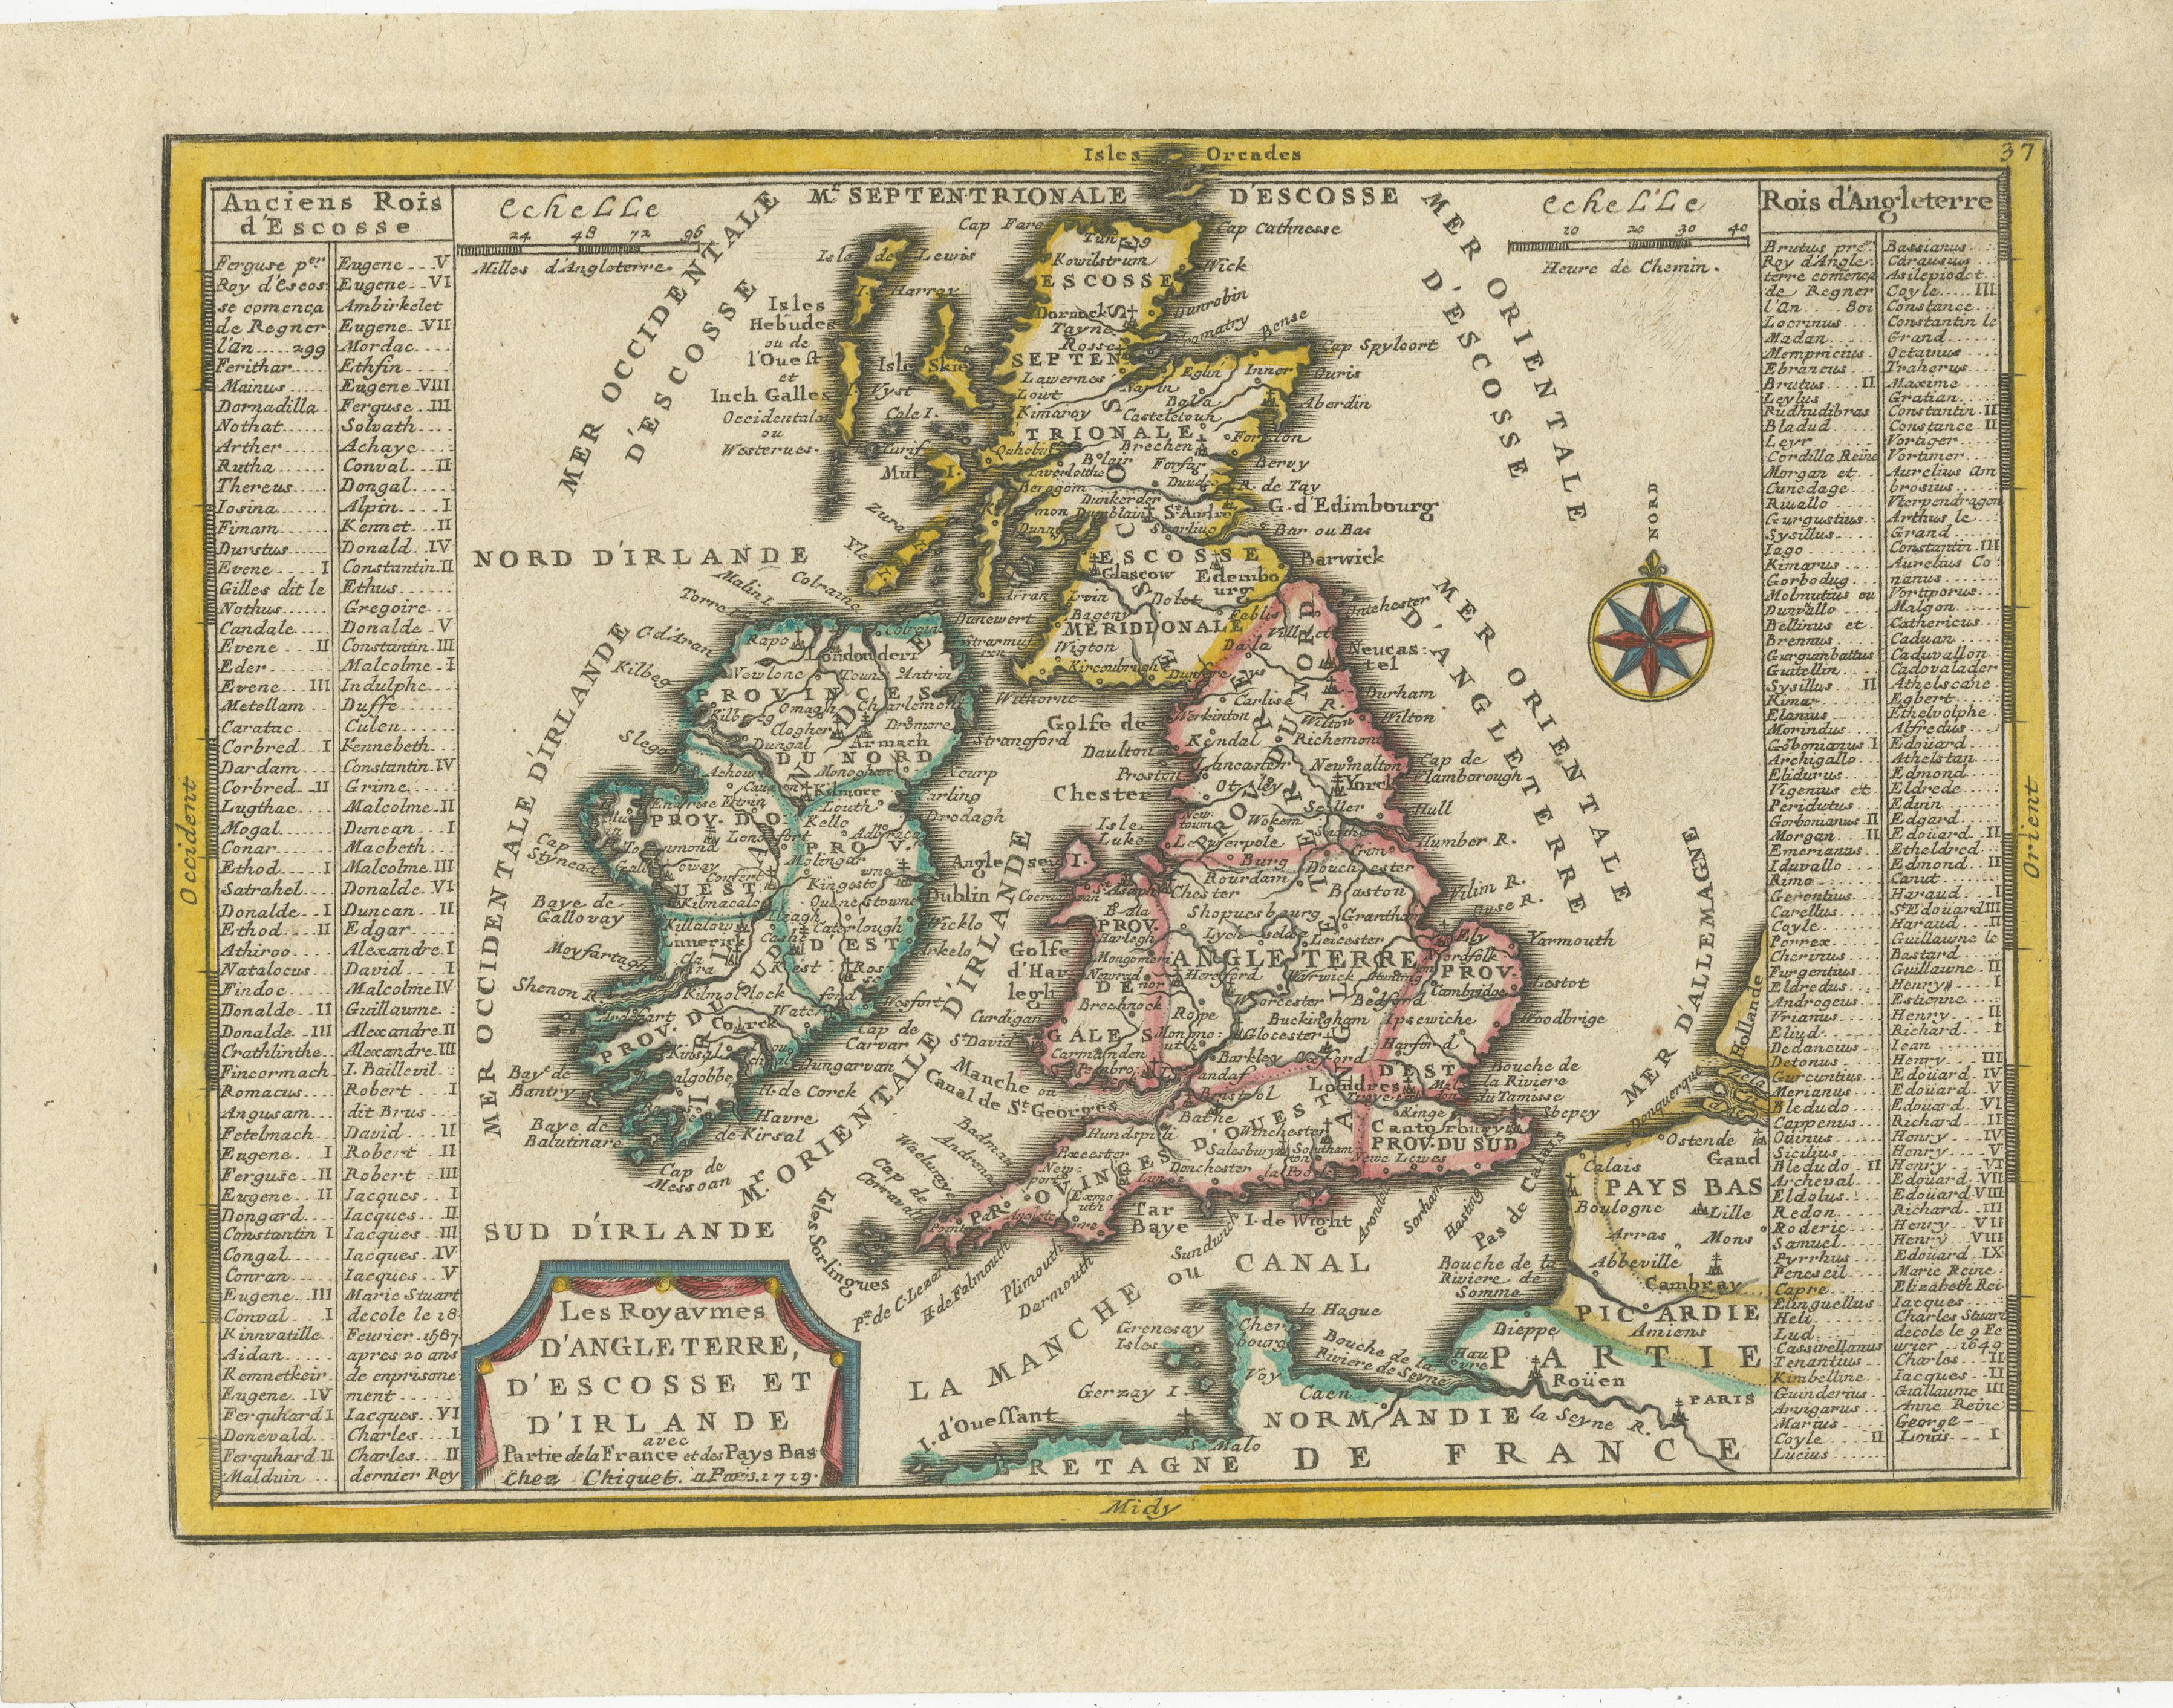 Carte ancienne intitulée 'Les Royaumes d'Angleterre d'Escosse et d'Irlande (...)'. Une jolie petite carte de l'Angleterre, du Pays de Galles, de l'Ecosse et de l'Irlande avec une partie du littoral de la France et des Pays-Bas. La carte est assez